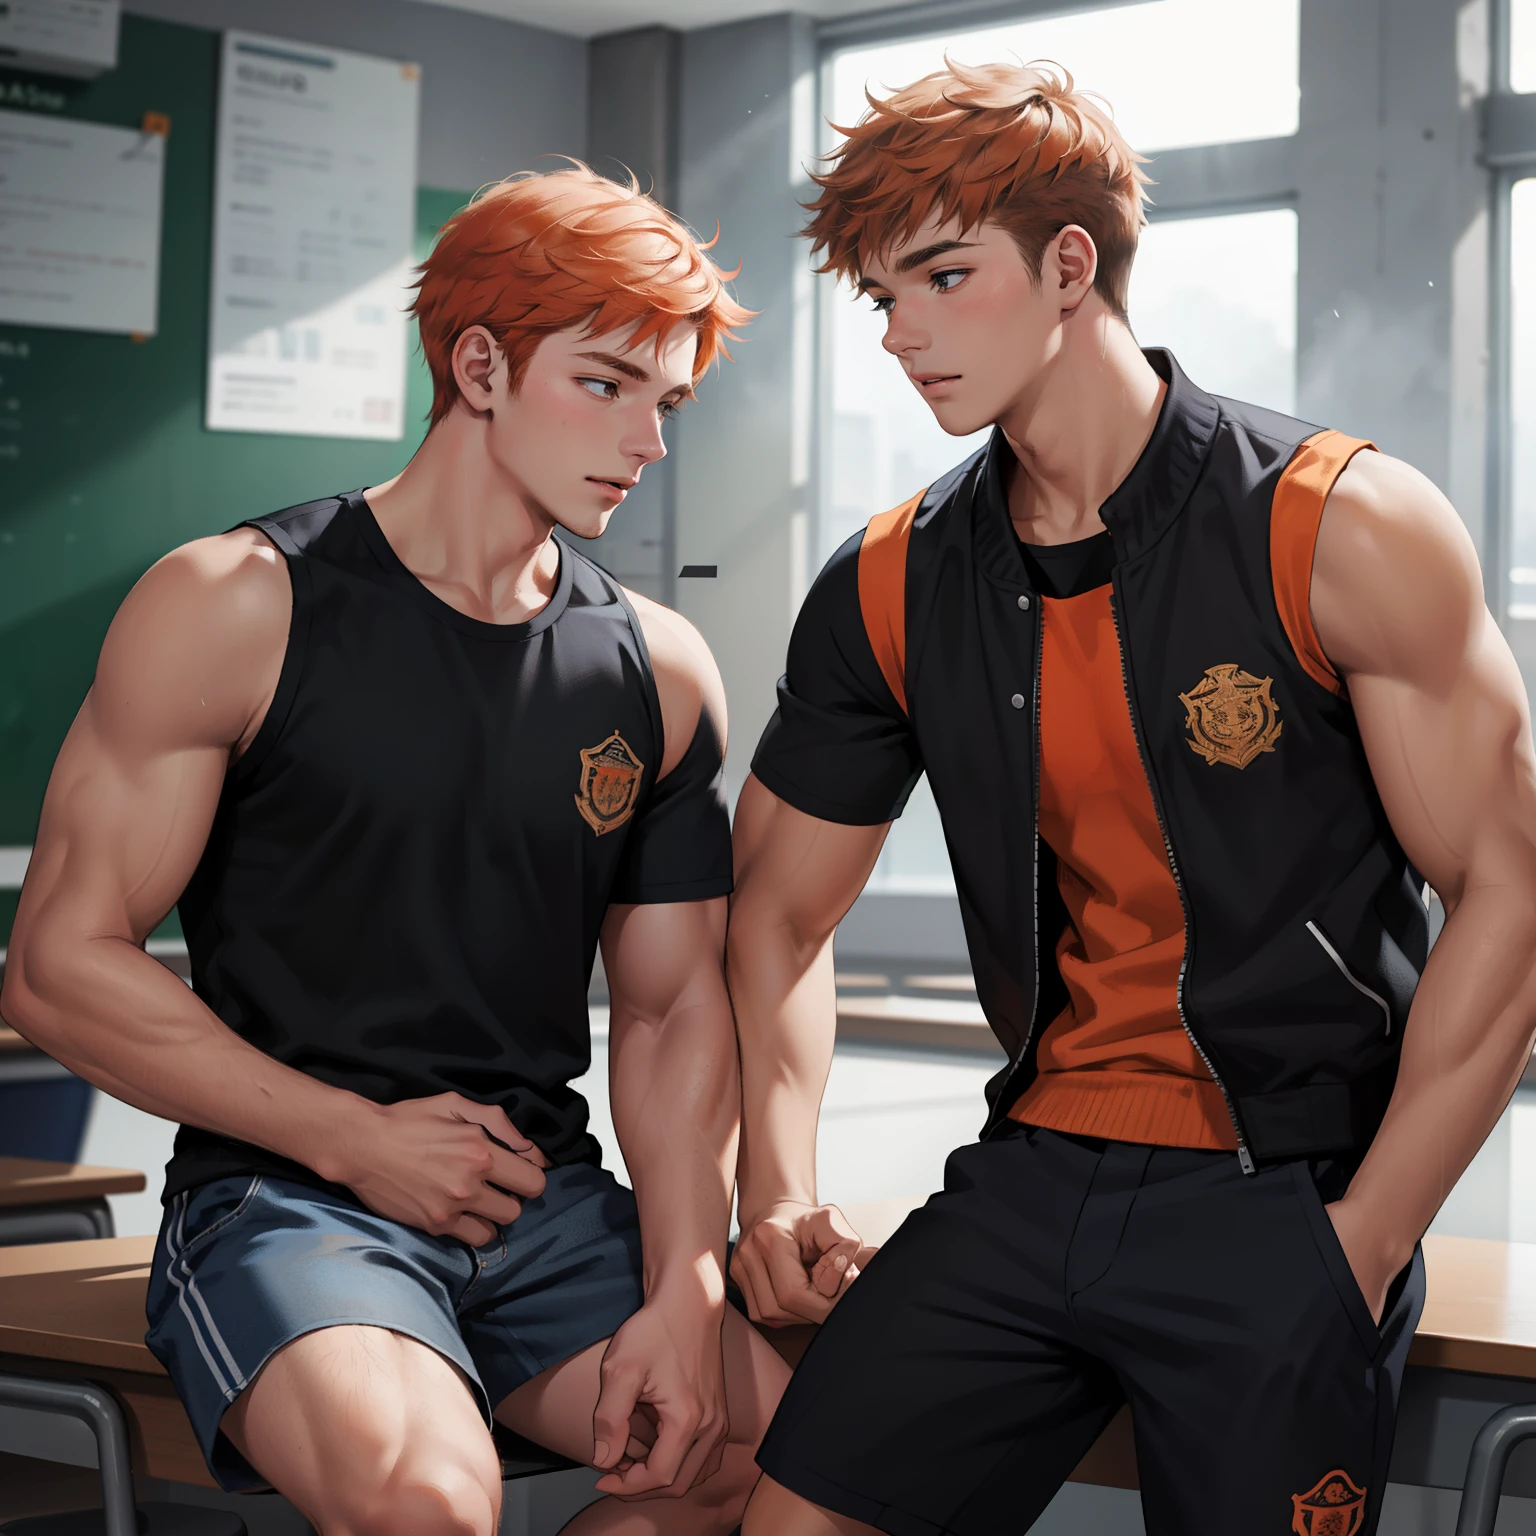 两名 15 岁的橙色头发的青少年男性朋友在学校聊天时分享了一个秘密，他们几乎是兄弟姐妹的朋友... (使用相同的字符)